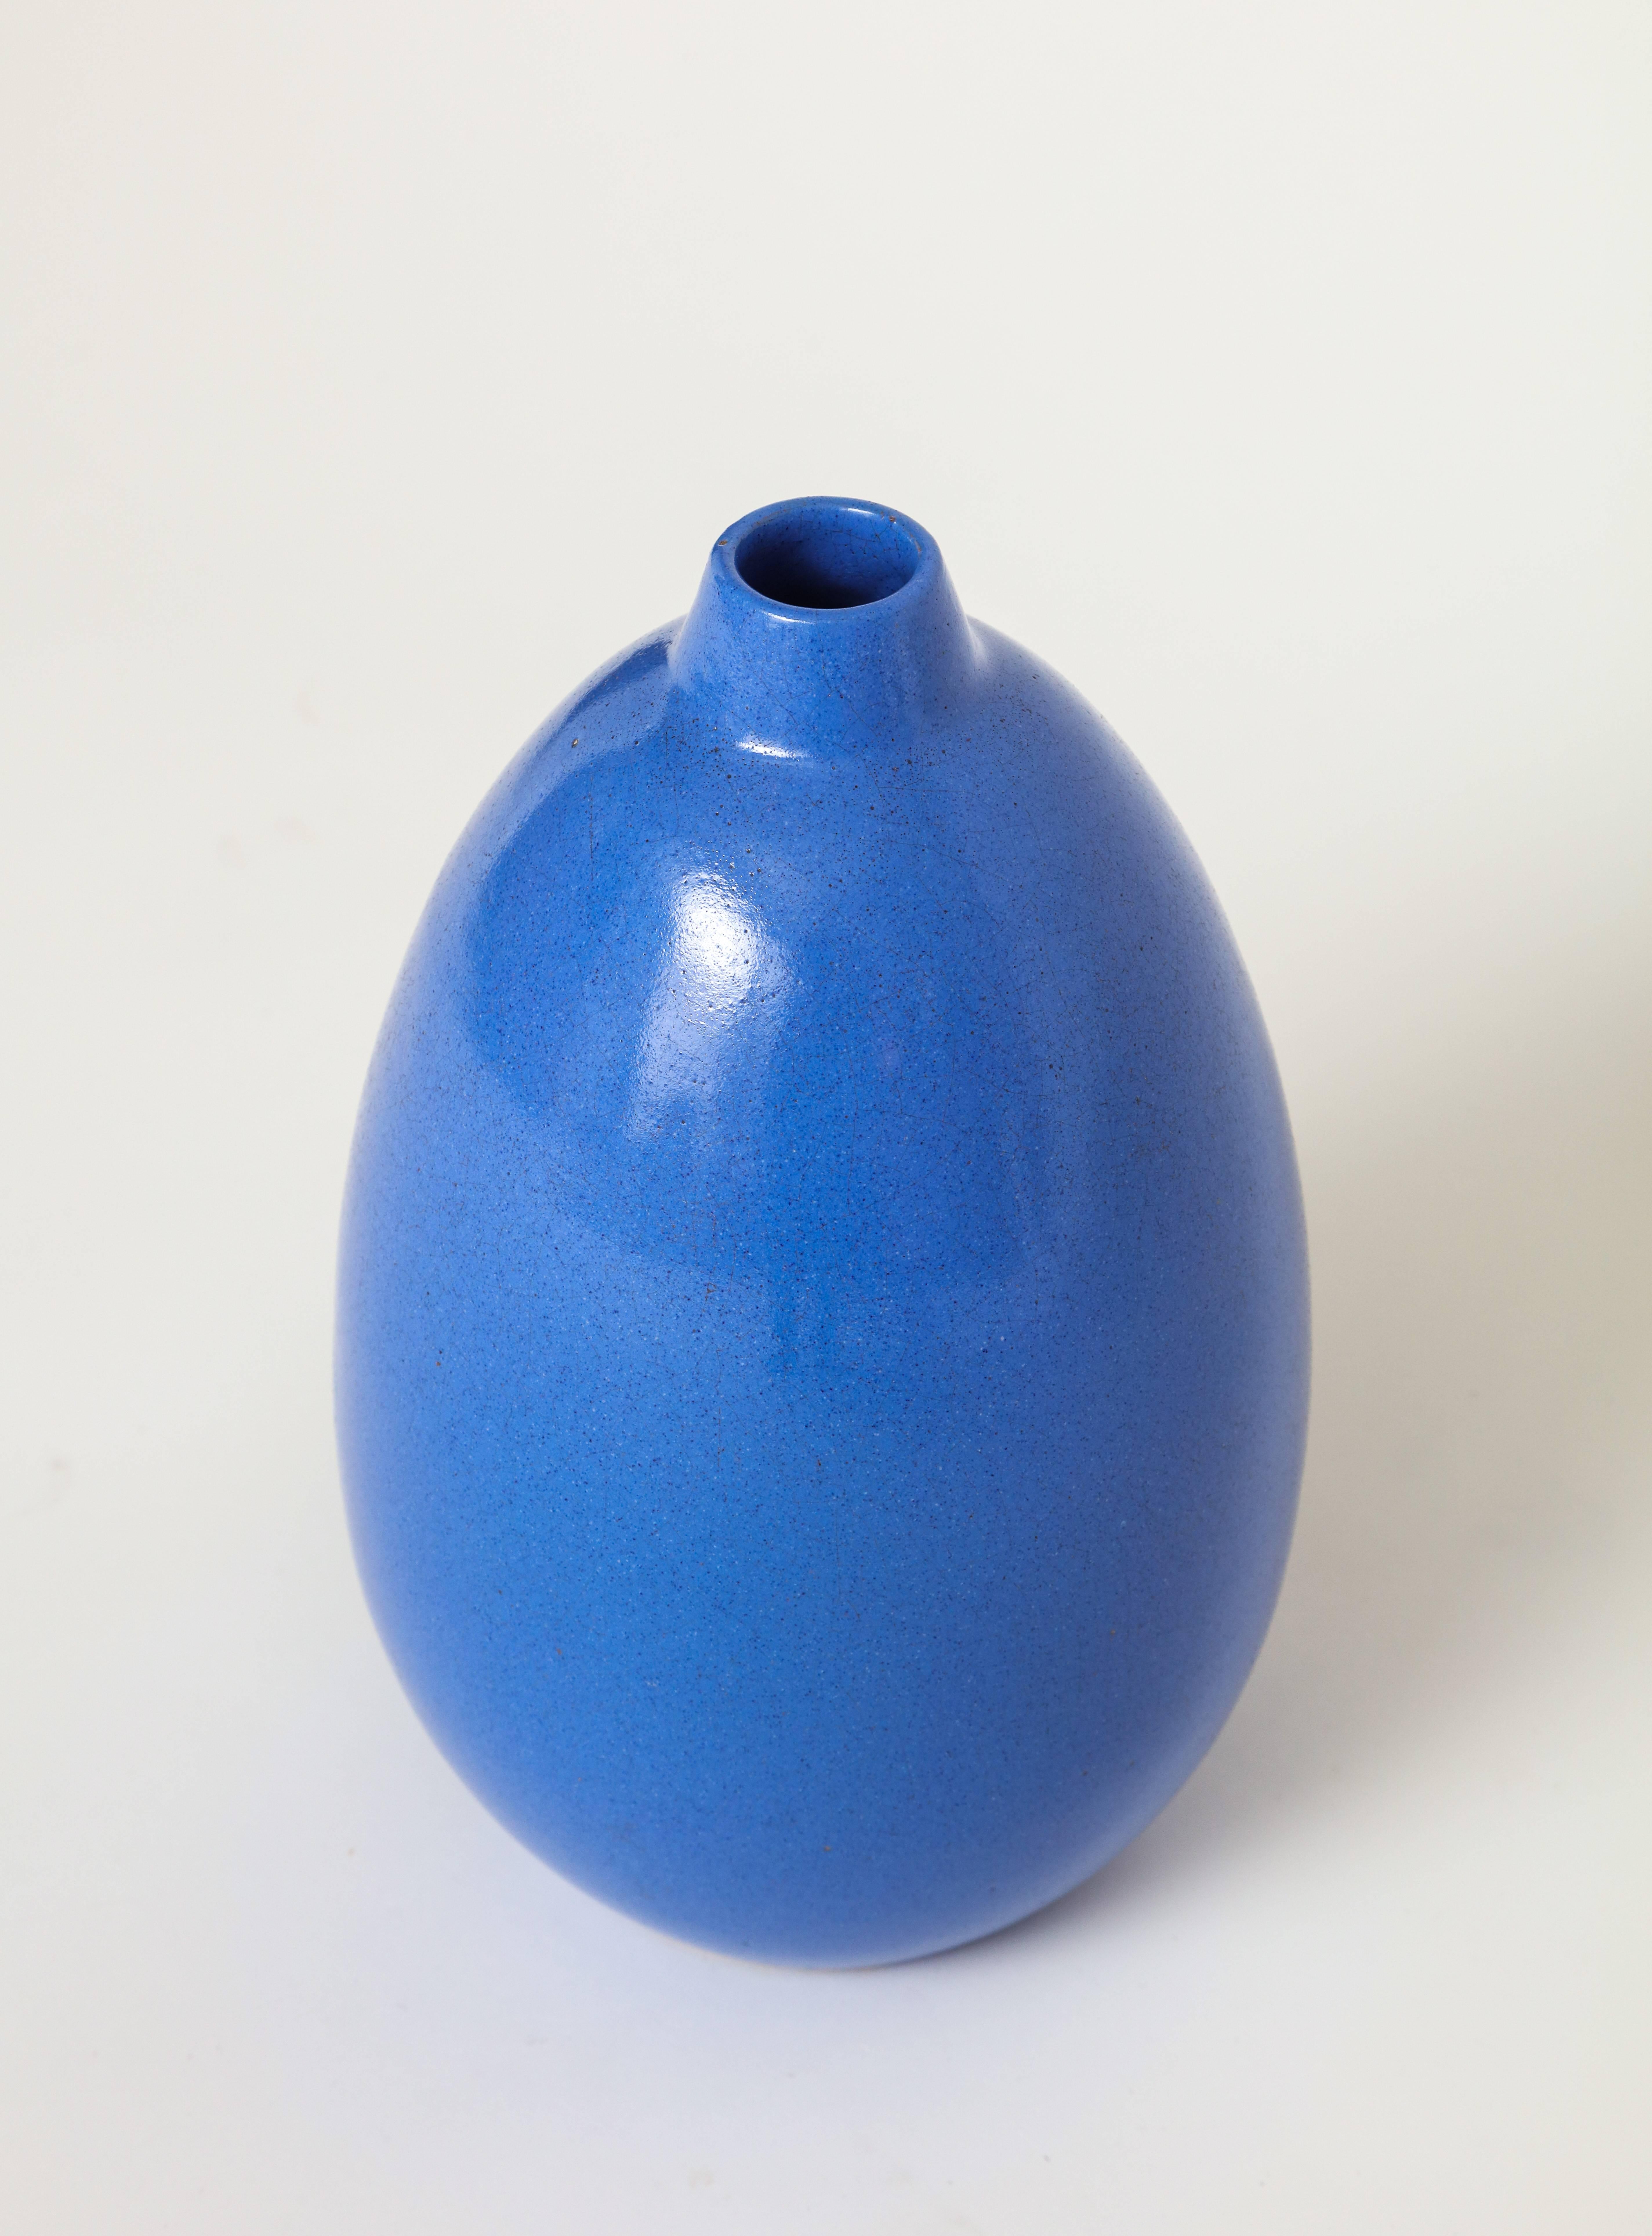 Vase bleu pourpre Primavera, France, années 1930.

Belle primavera bleue en très bon état, sans éclats ni fissures. Rare dans cette couleur. Signés et numérotés.